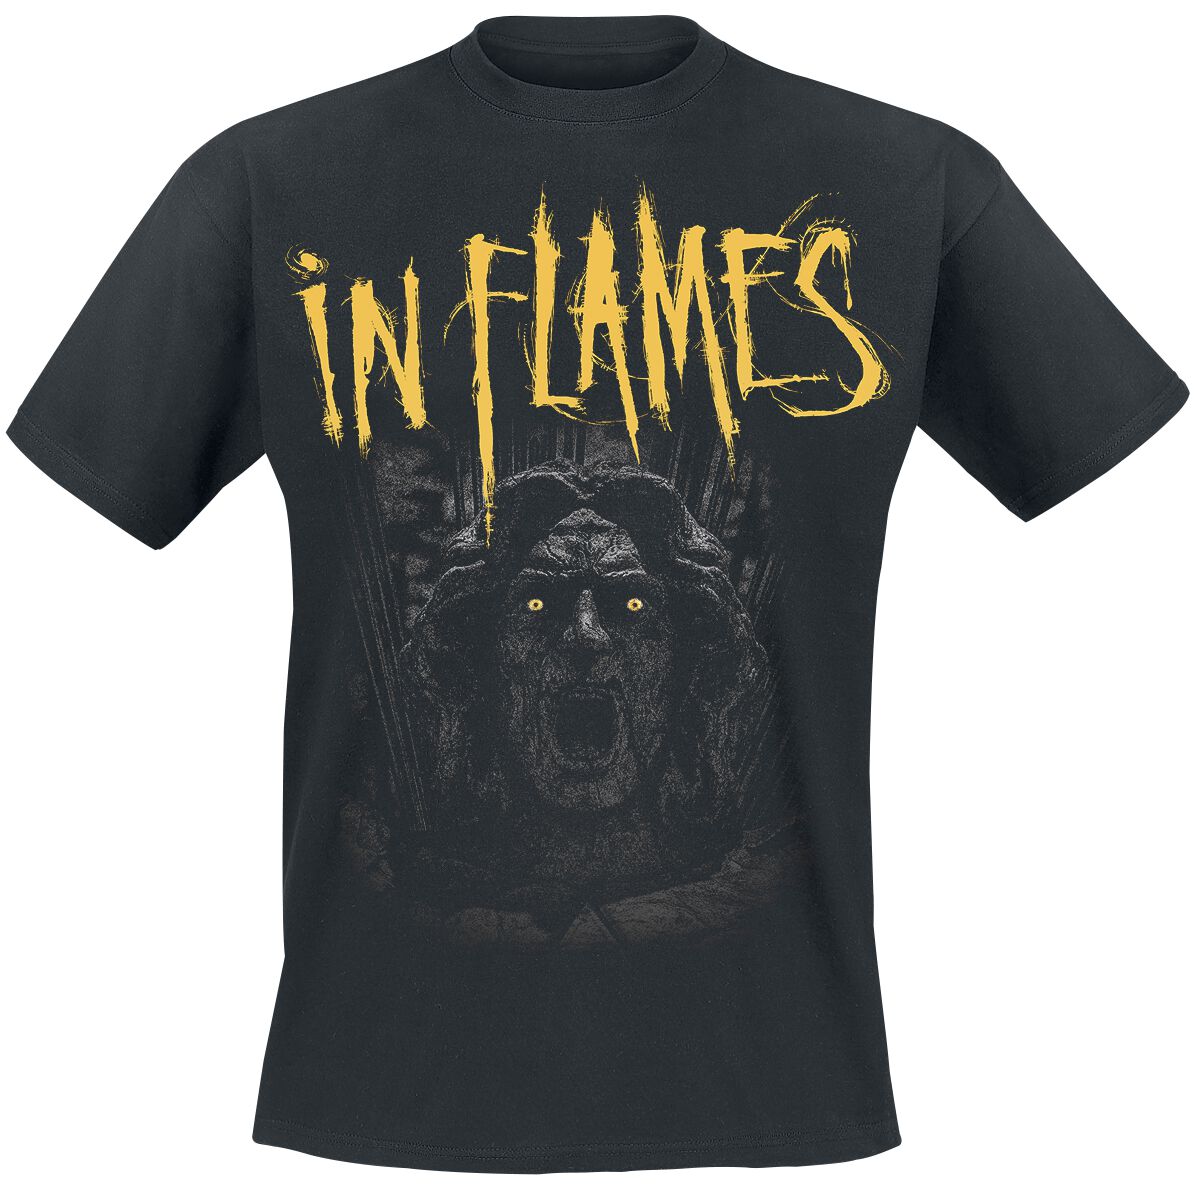 In Flames T-Shirt - Clayman We Trust - S bis XXL - für Männer - Größe XXL - schwarz  - EMP exklusives Merchandise!